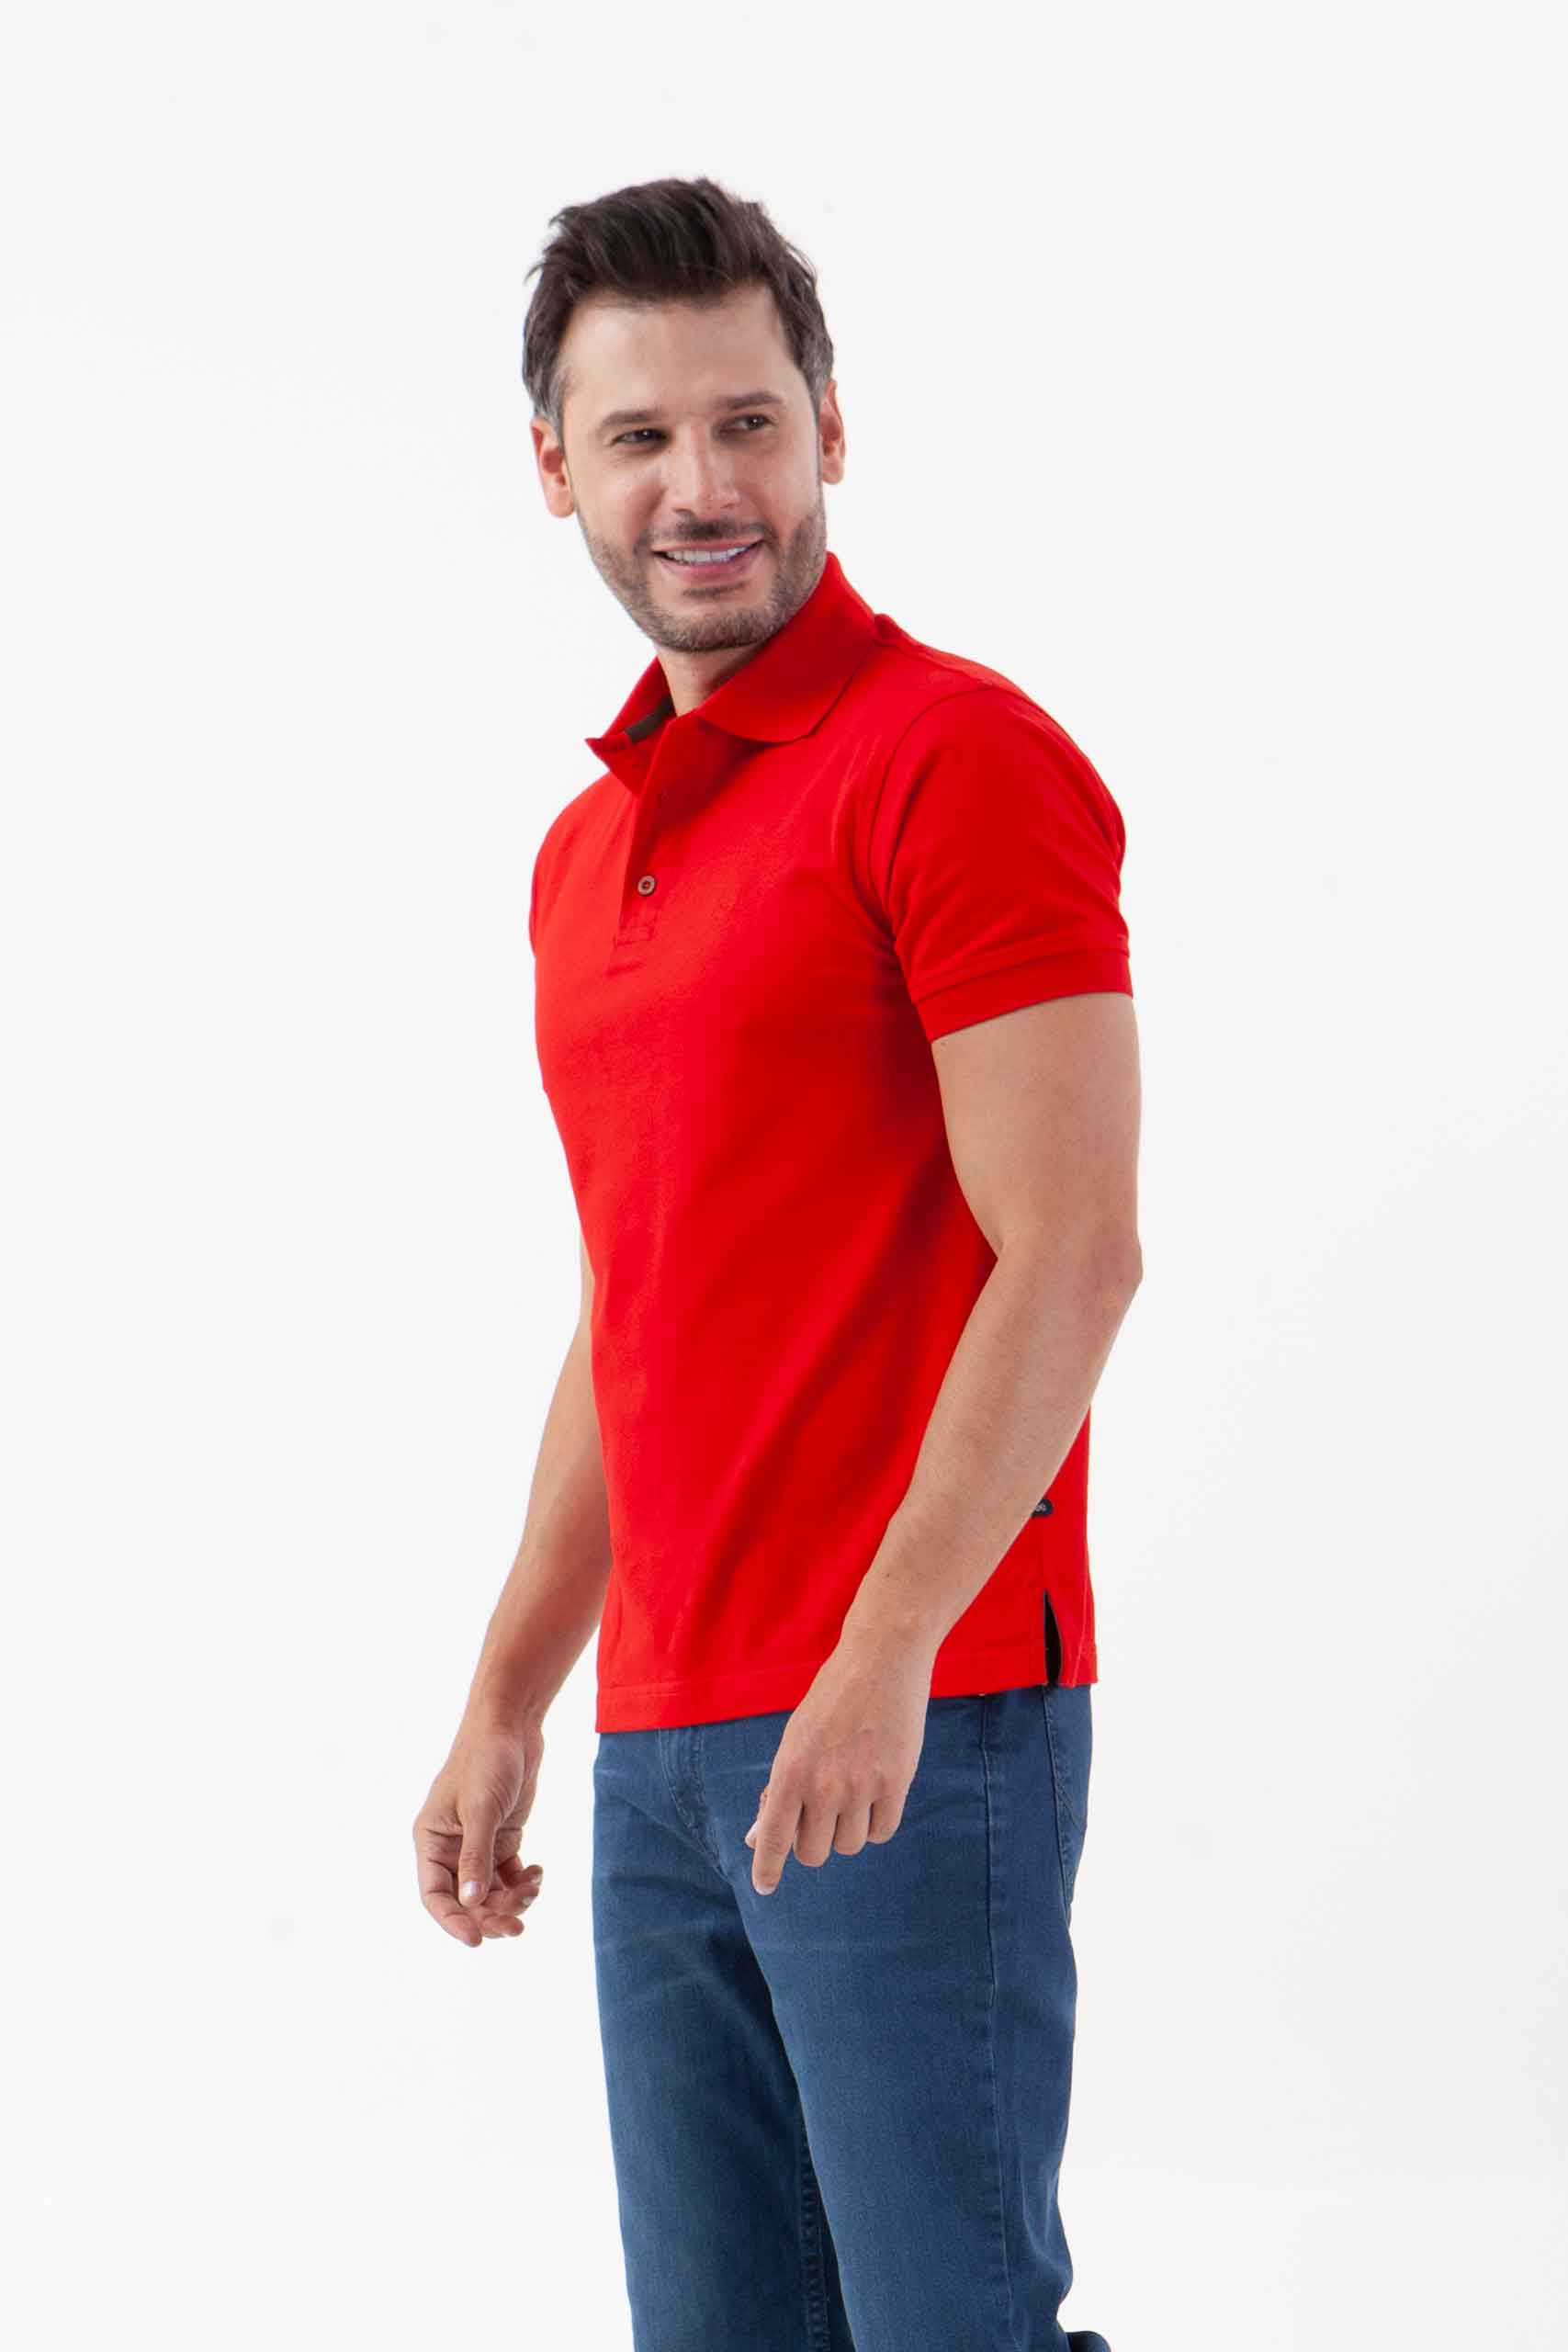 Vista latera de camiseta de color rojo de marca lee